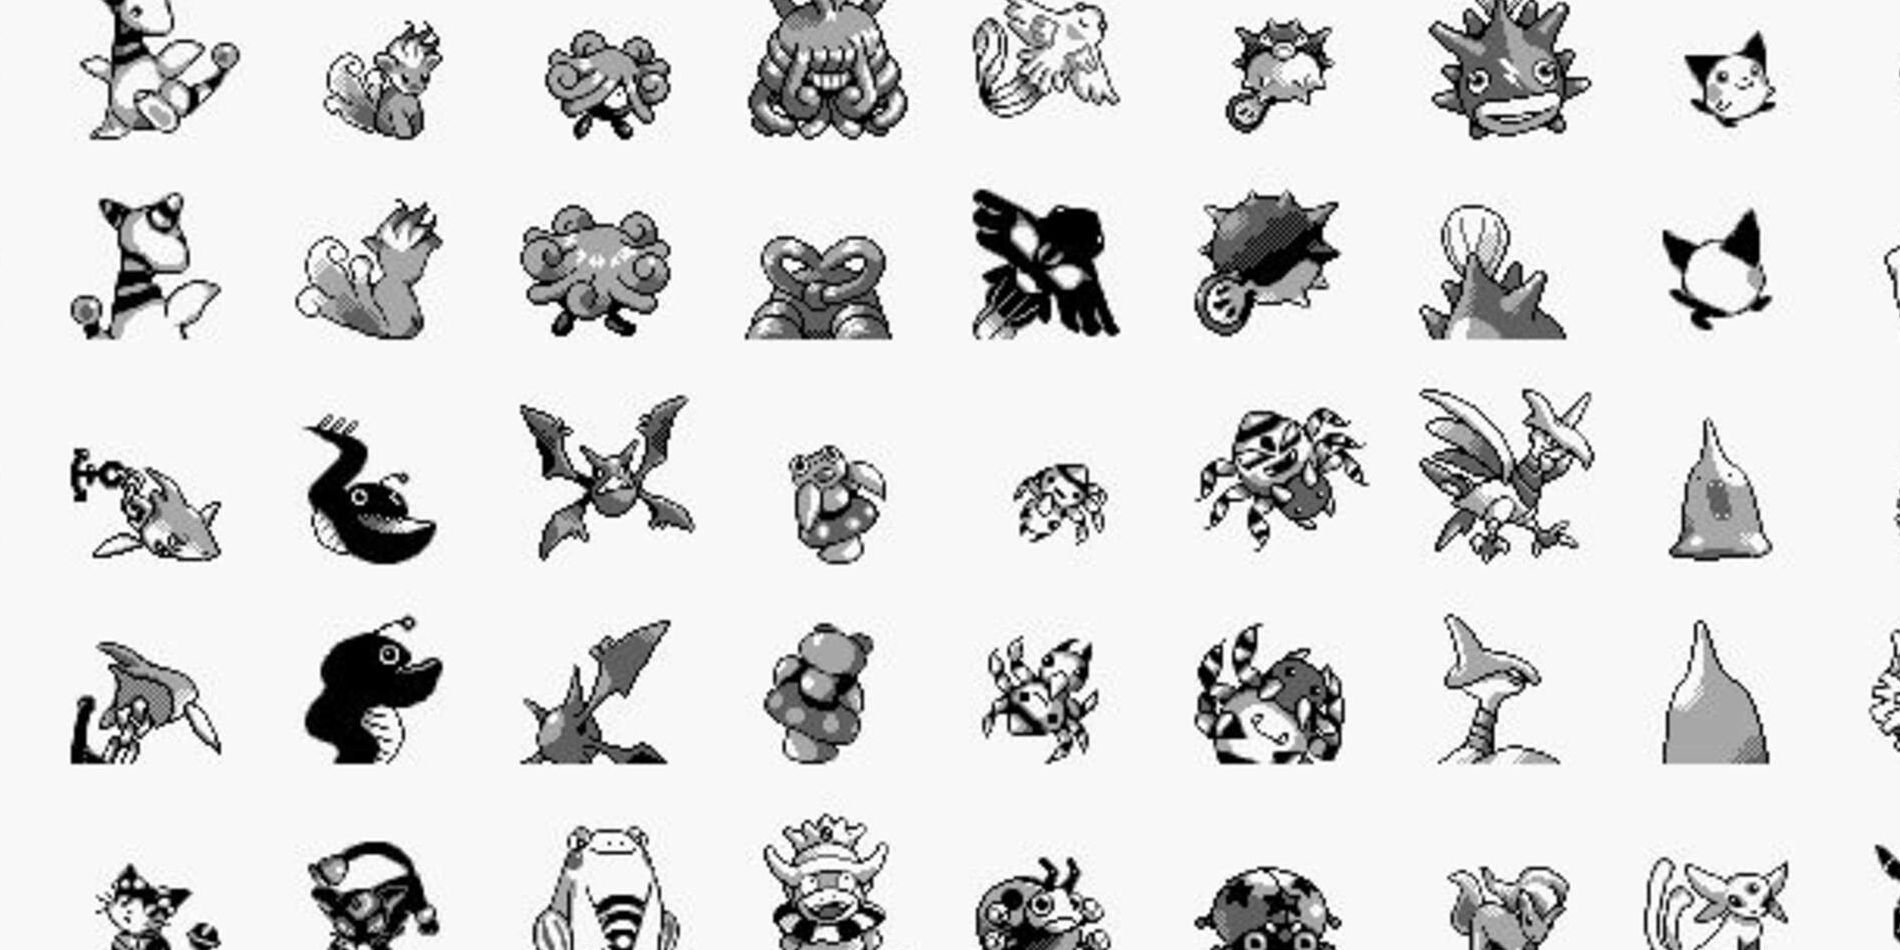 Diseños de Pokémon no utilizados que podrían aparecer en juegos futuros